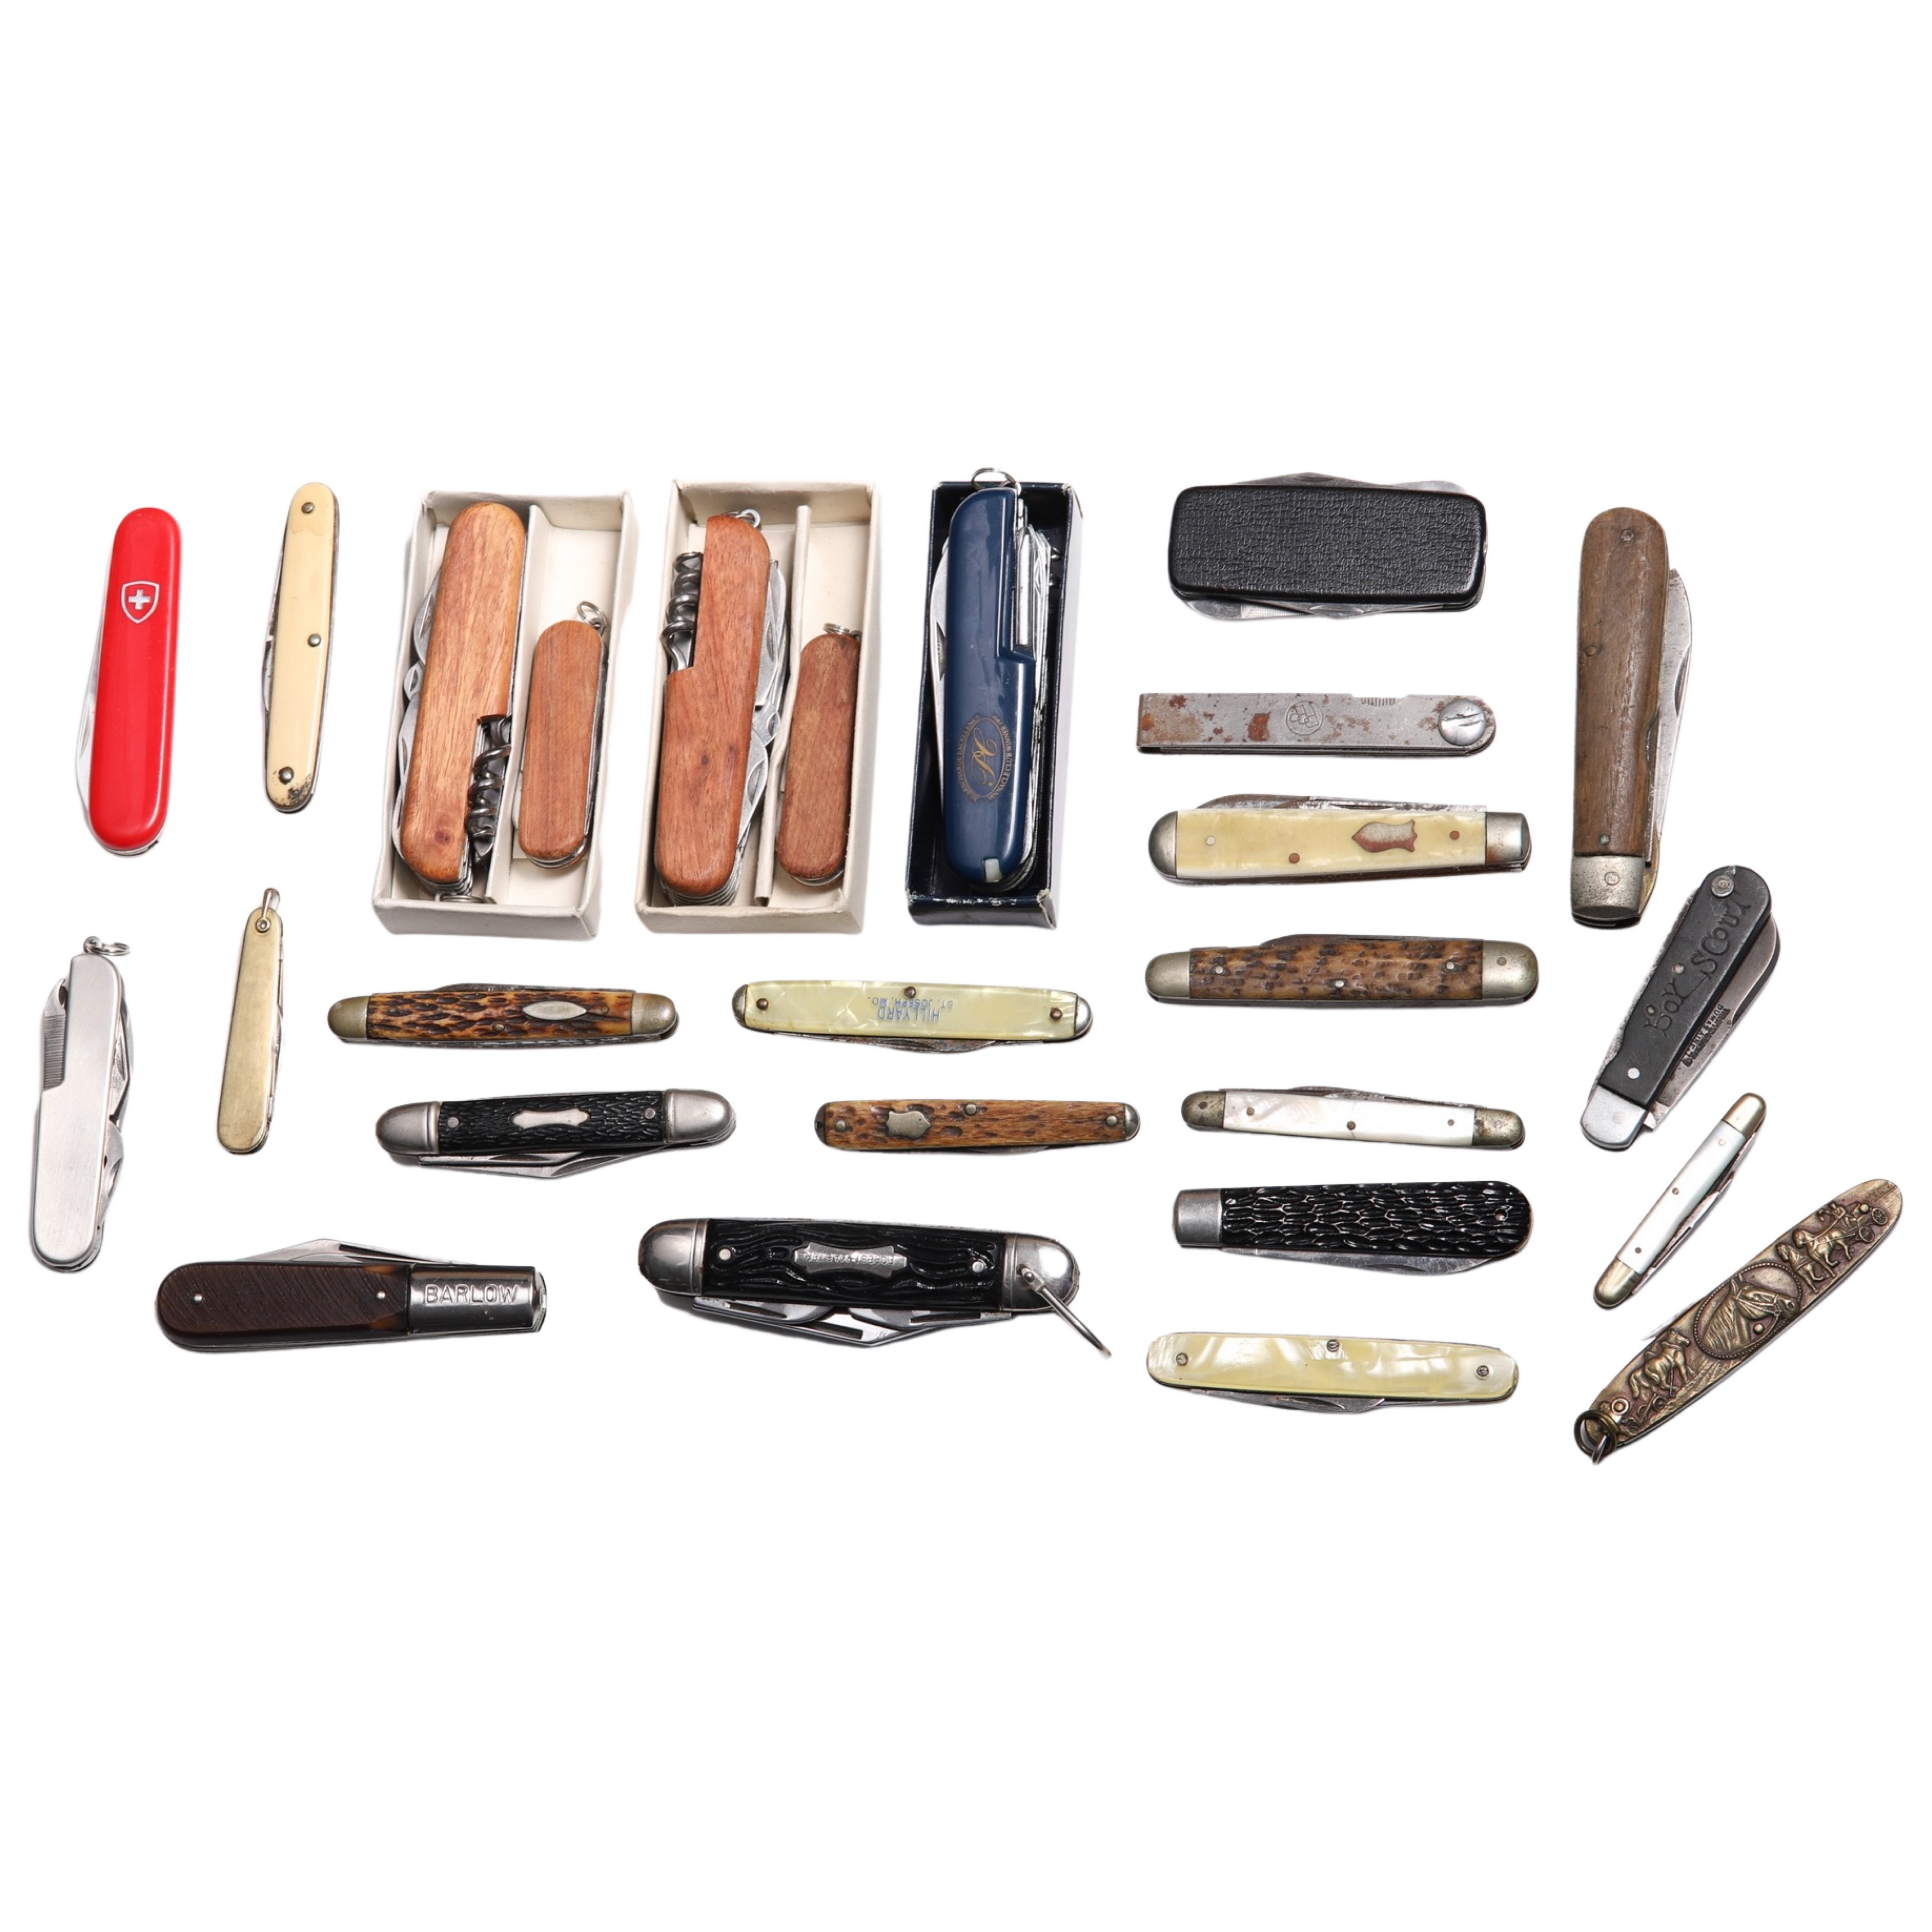  26 Pocket knives including Depose 30ffc3